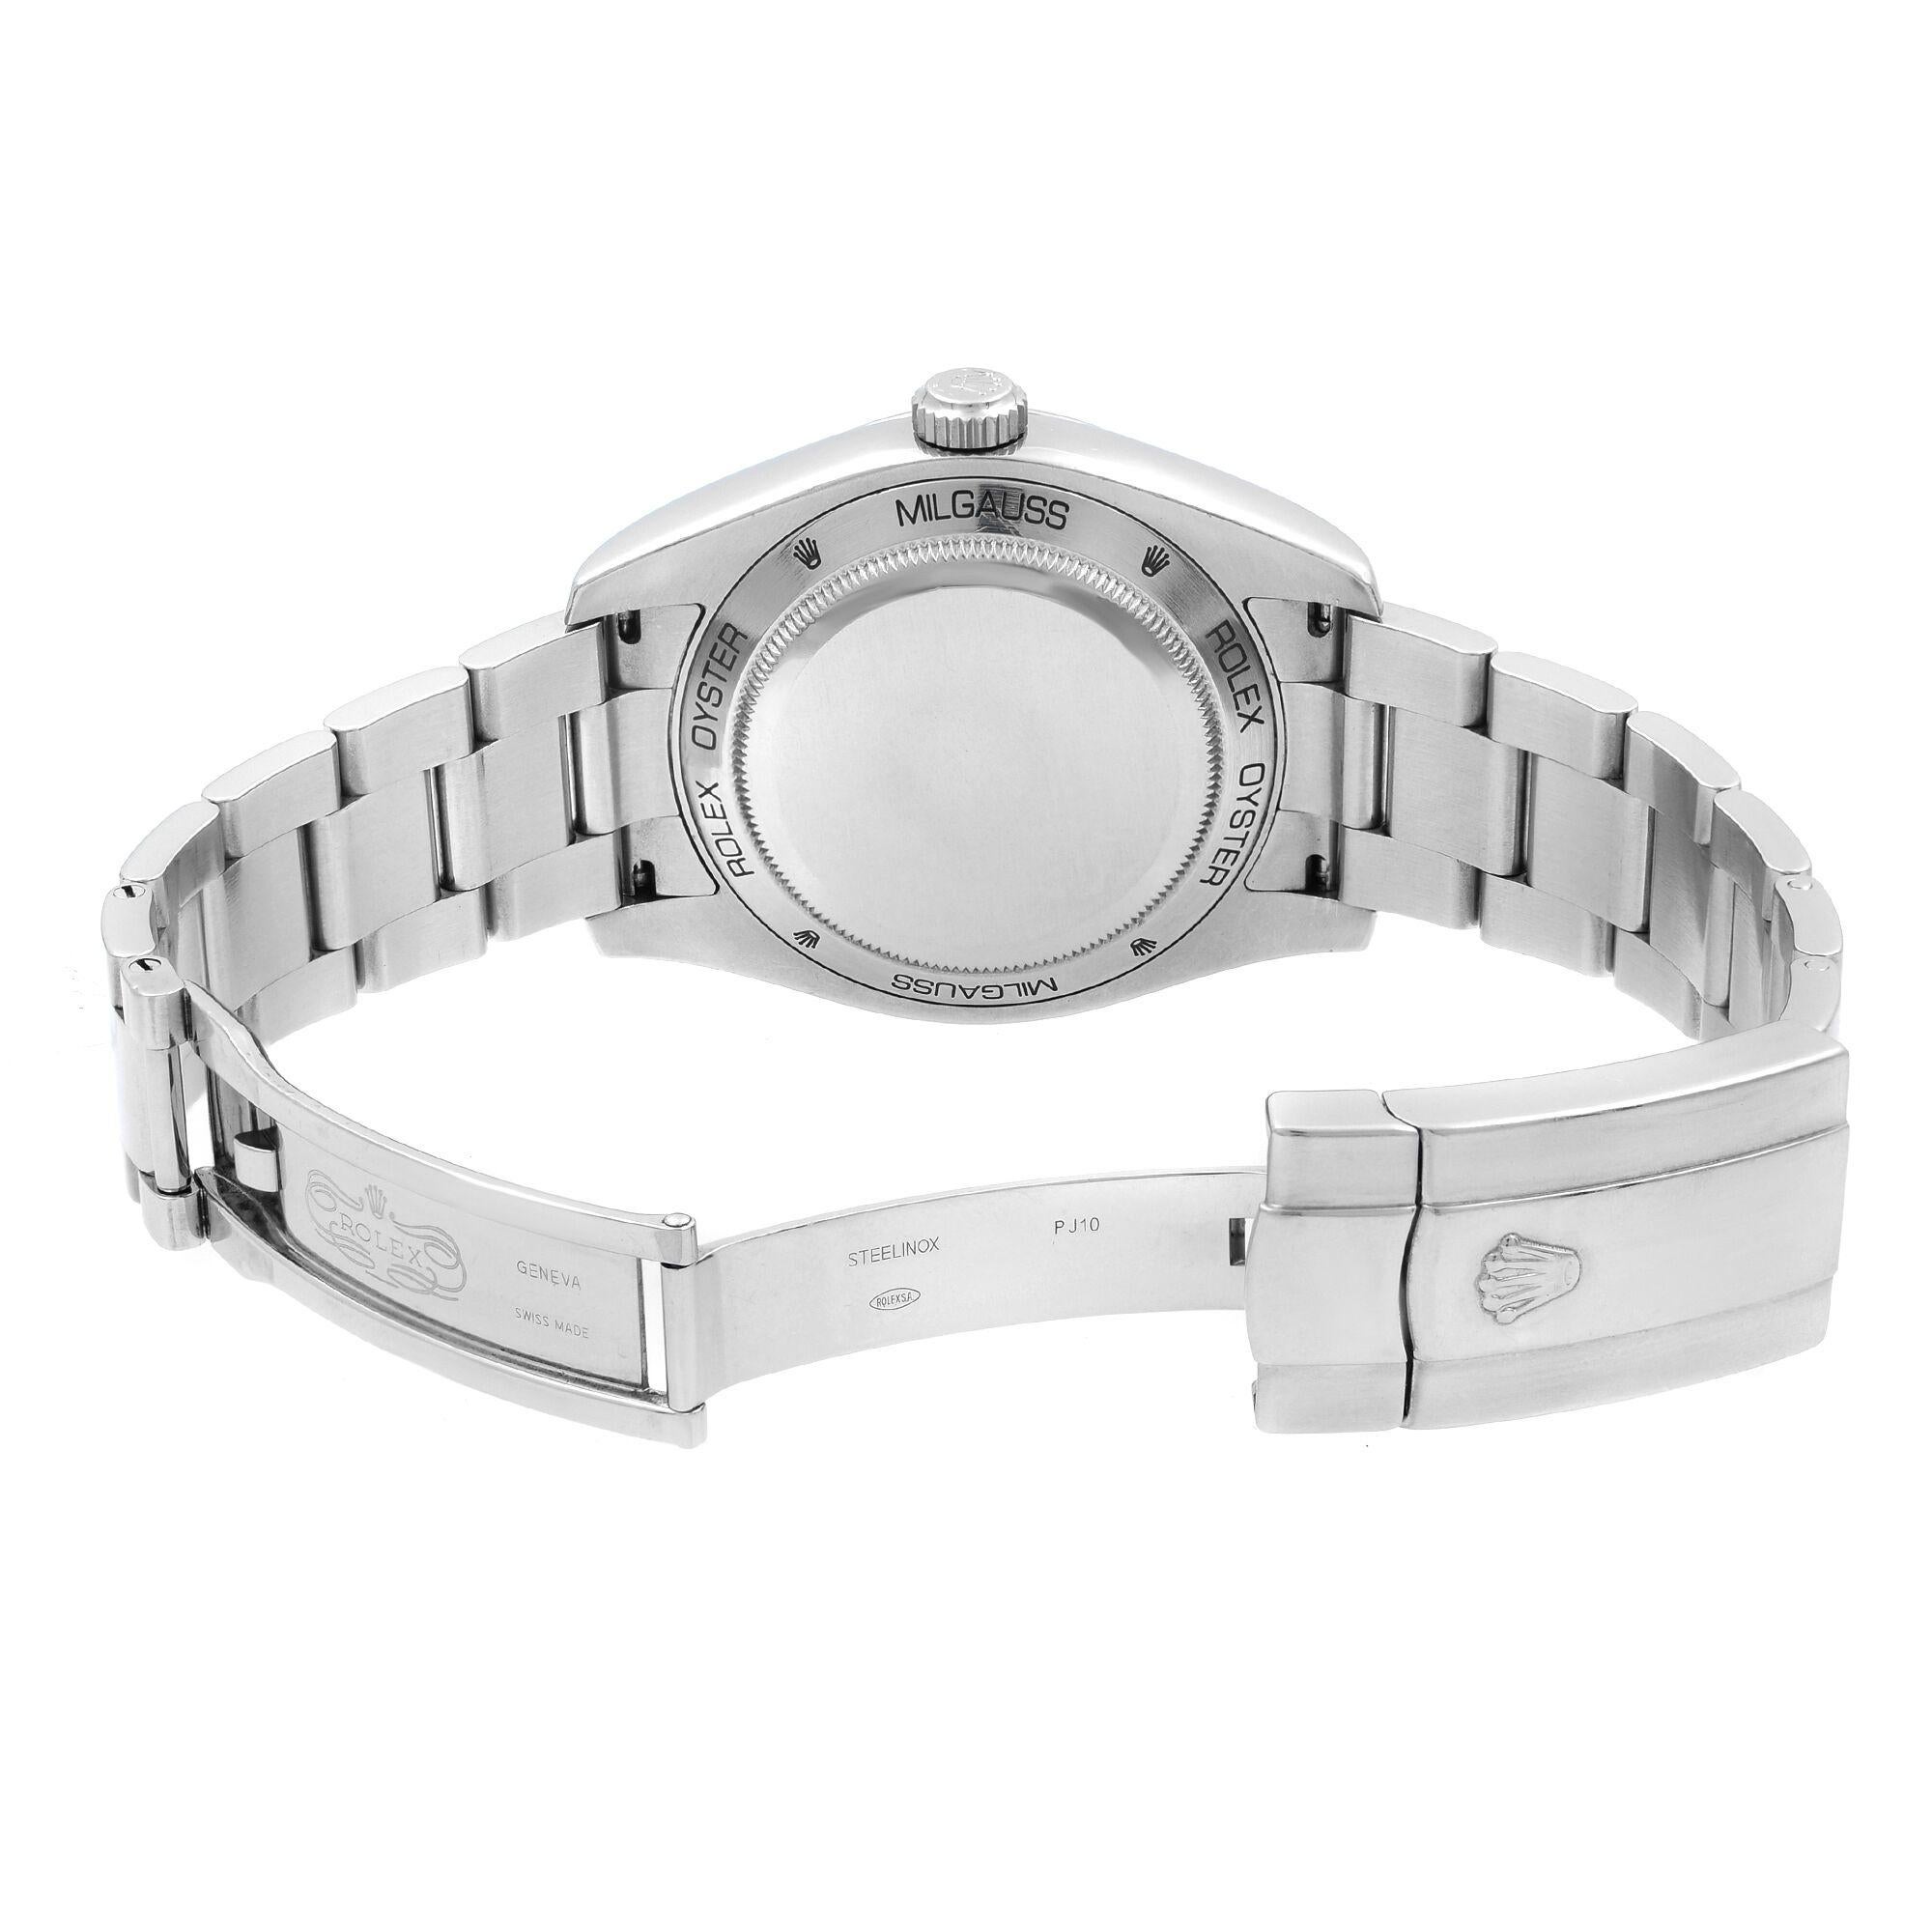 Rolex Milgauss Steel Black Dial Orange Hand Automatic Men's Watch 116400 BKO 2